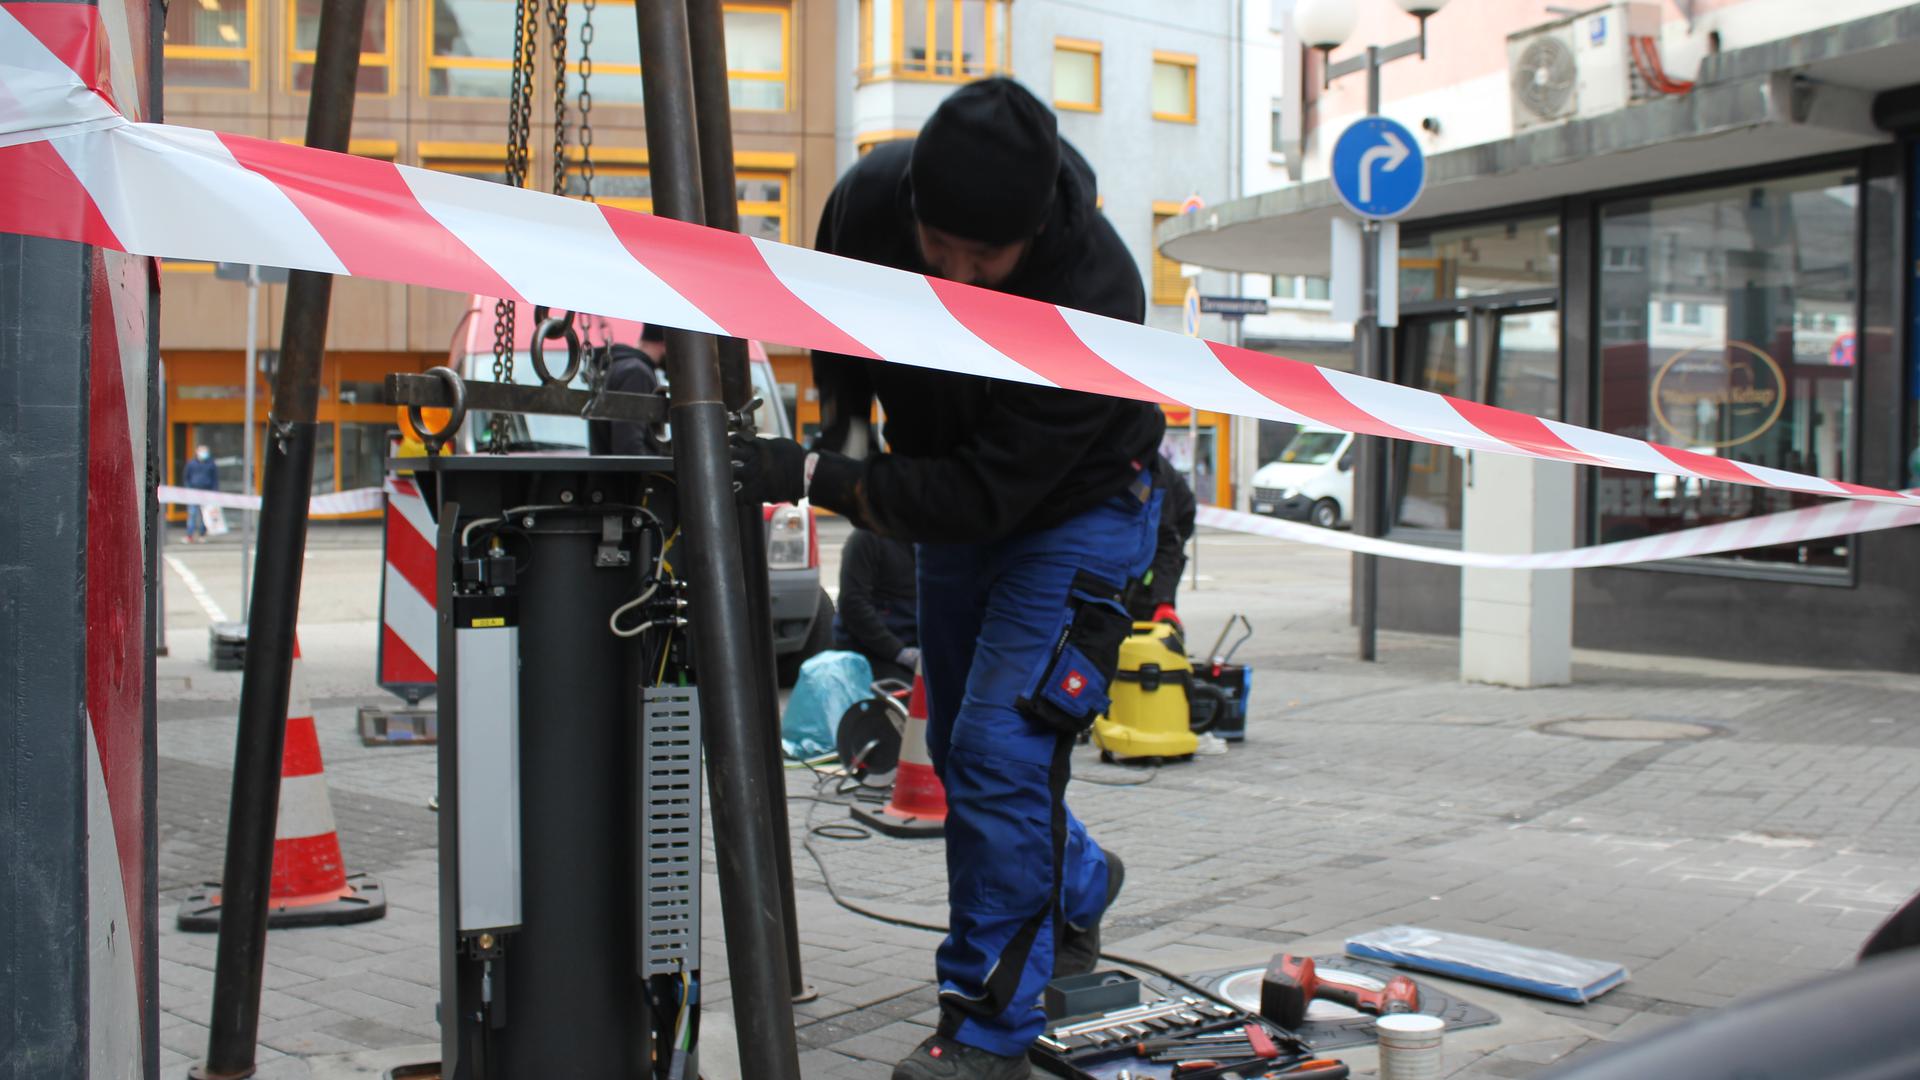 Mehr Sicherheit: Das verspricht sich die Stadt von den versenkbaren Pollern, die in der Lammstraße und in der Blumenstraße installiert wurden. Am 19. April sollen sie in Betrieb gehen.